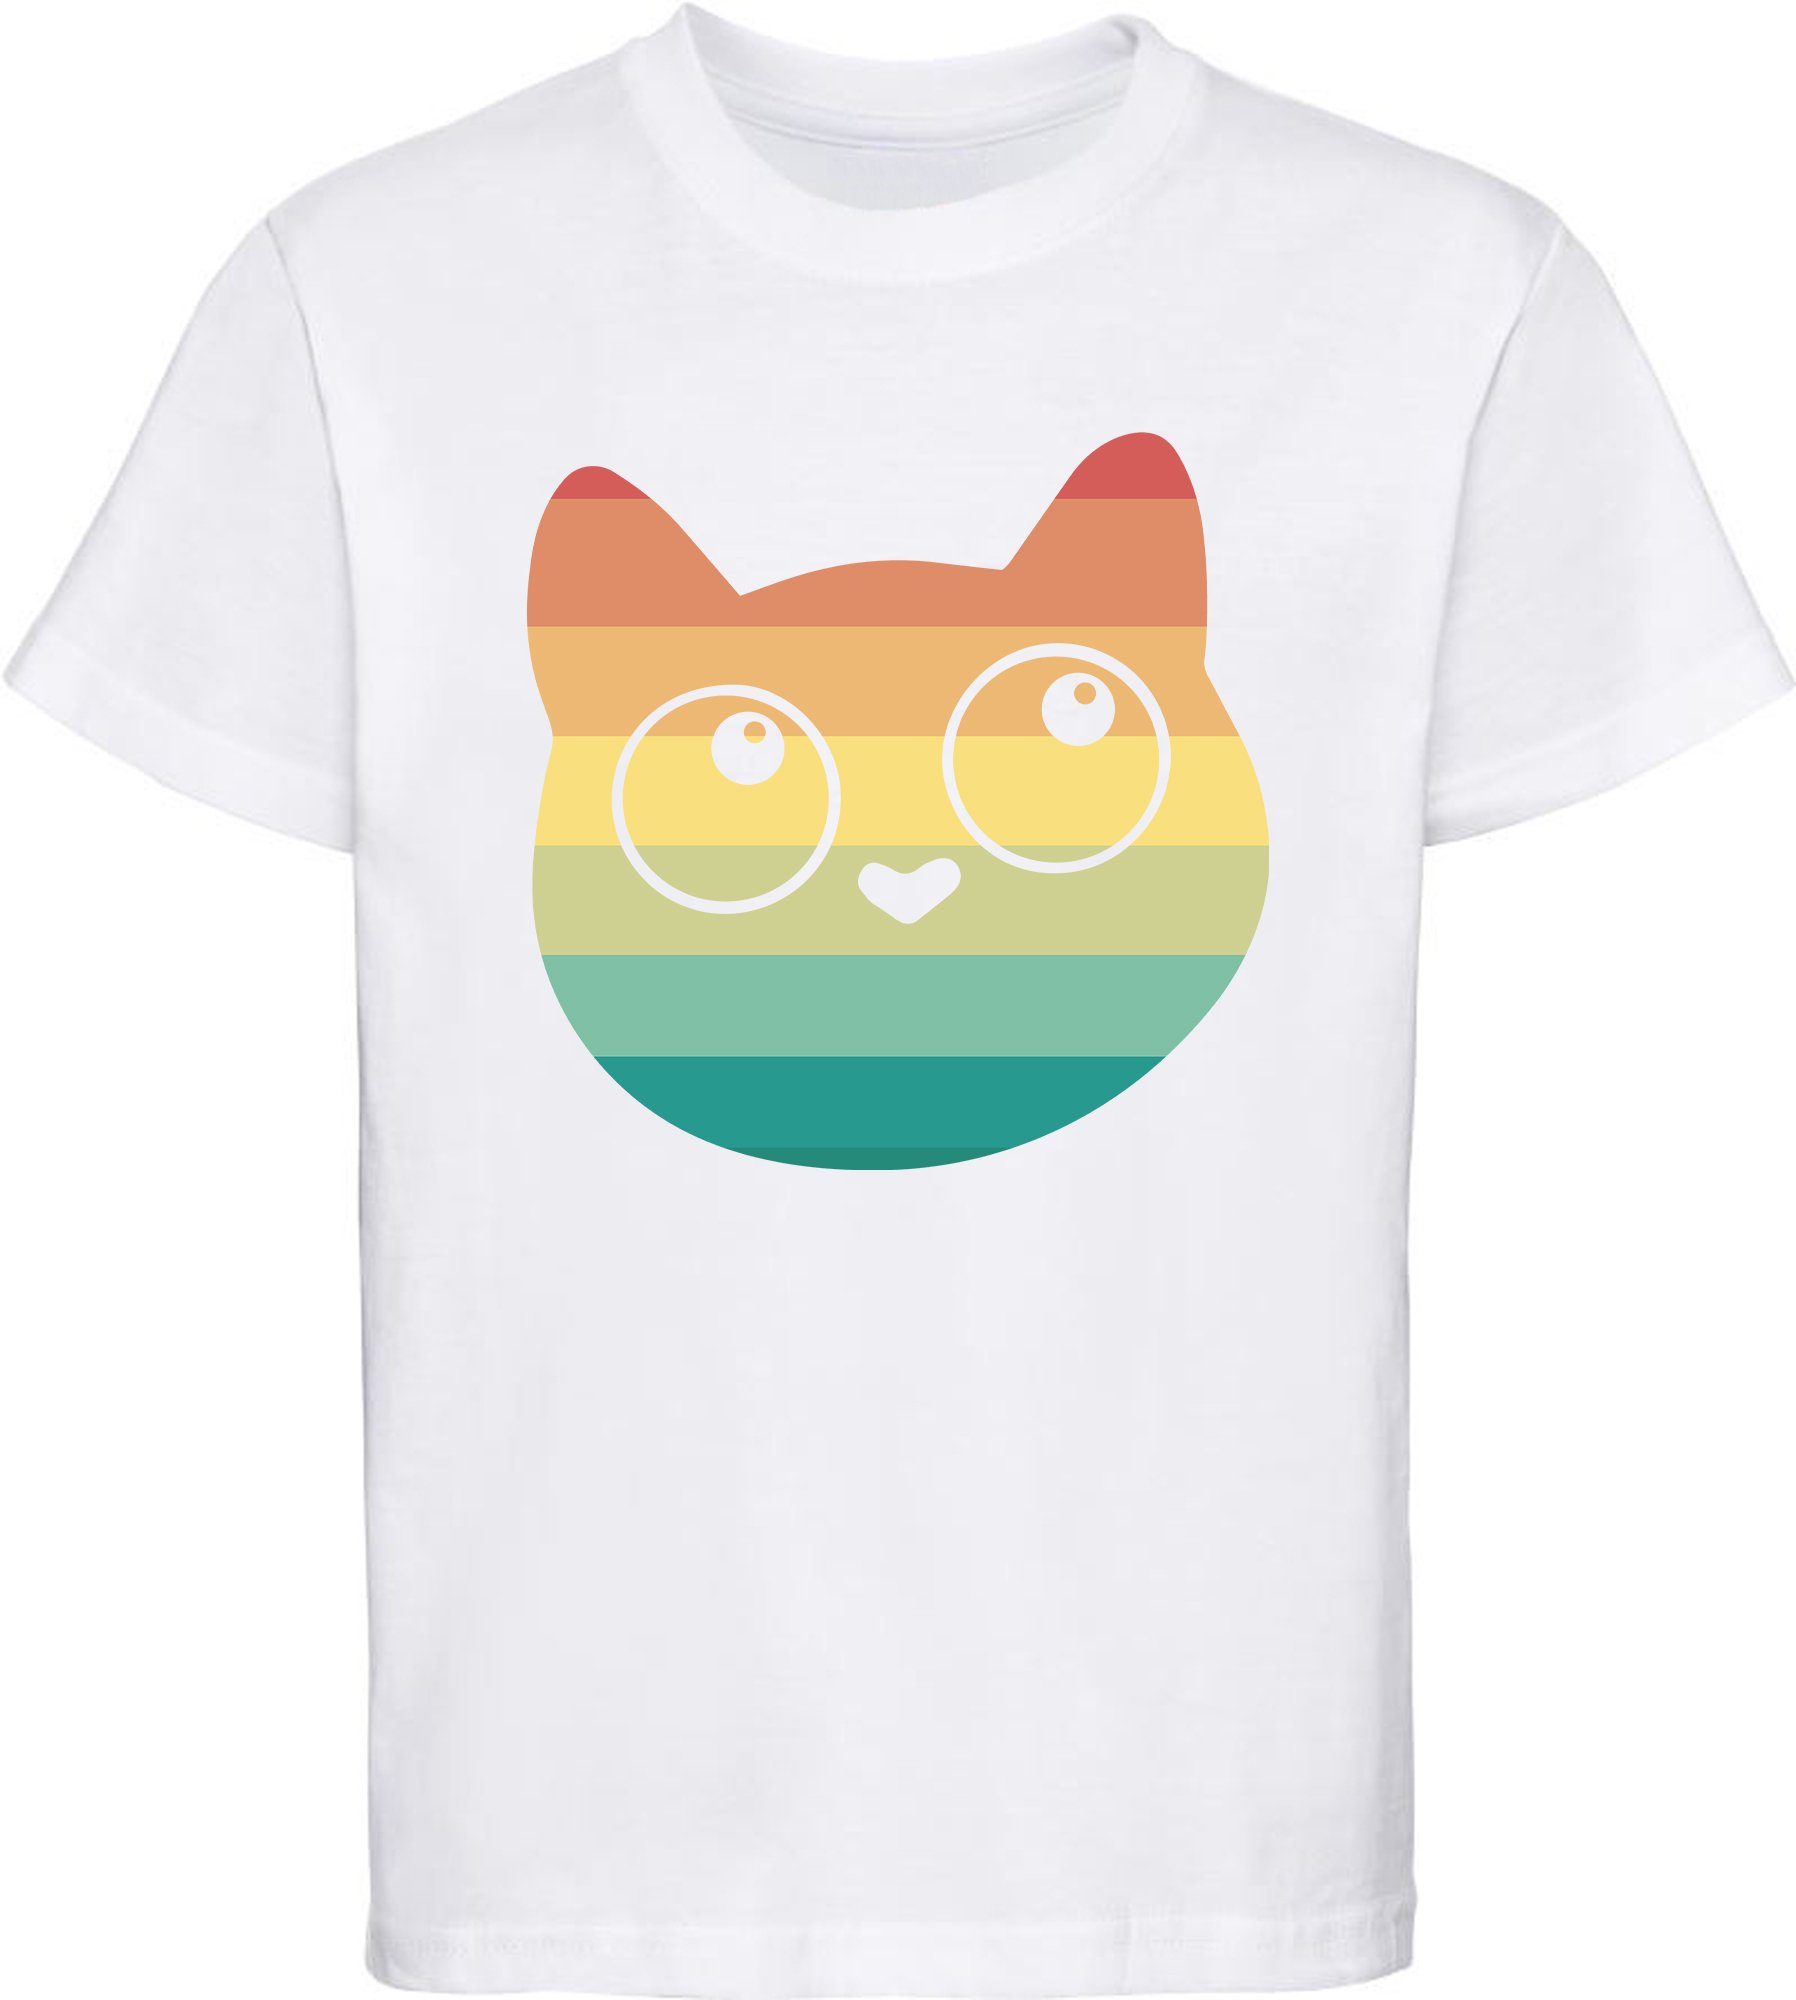 MyDesign24 Print-Shirt bedrucktes Mädchen T-Shirt mit Retro Kitty Aufdruck Baumwollshirt mit Katze, weiß, schwarz, rot, rosa, i128 weiss